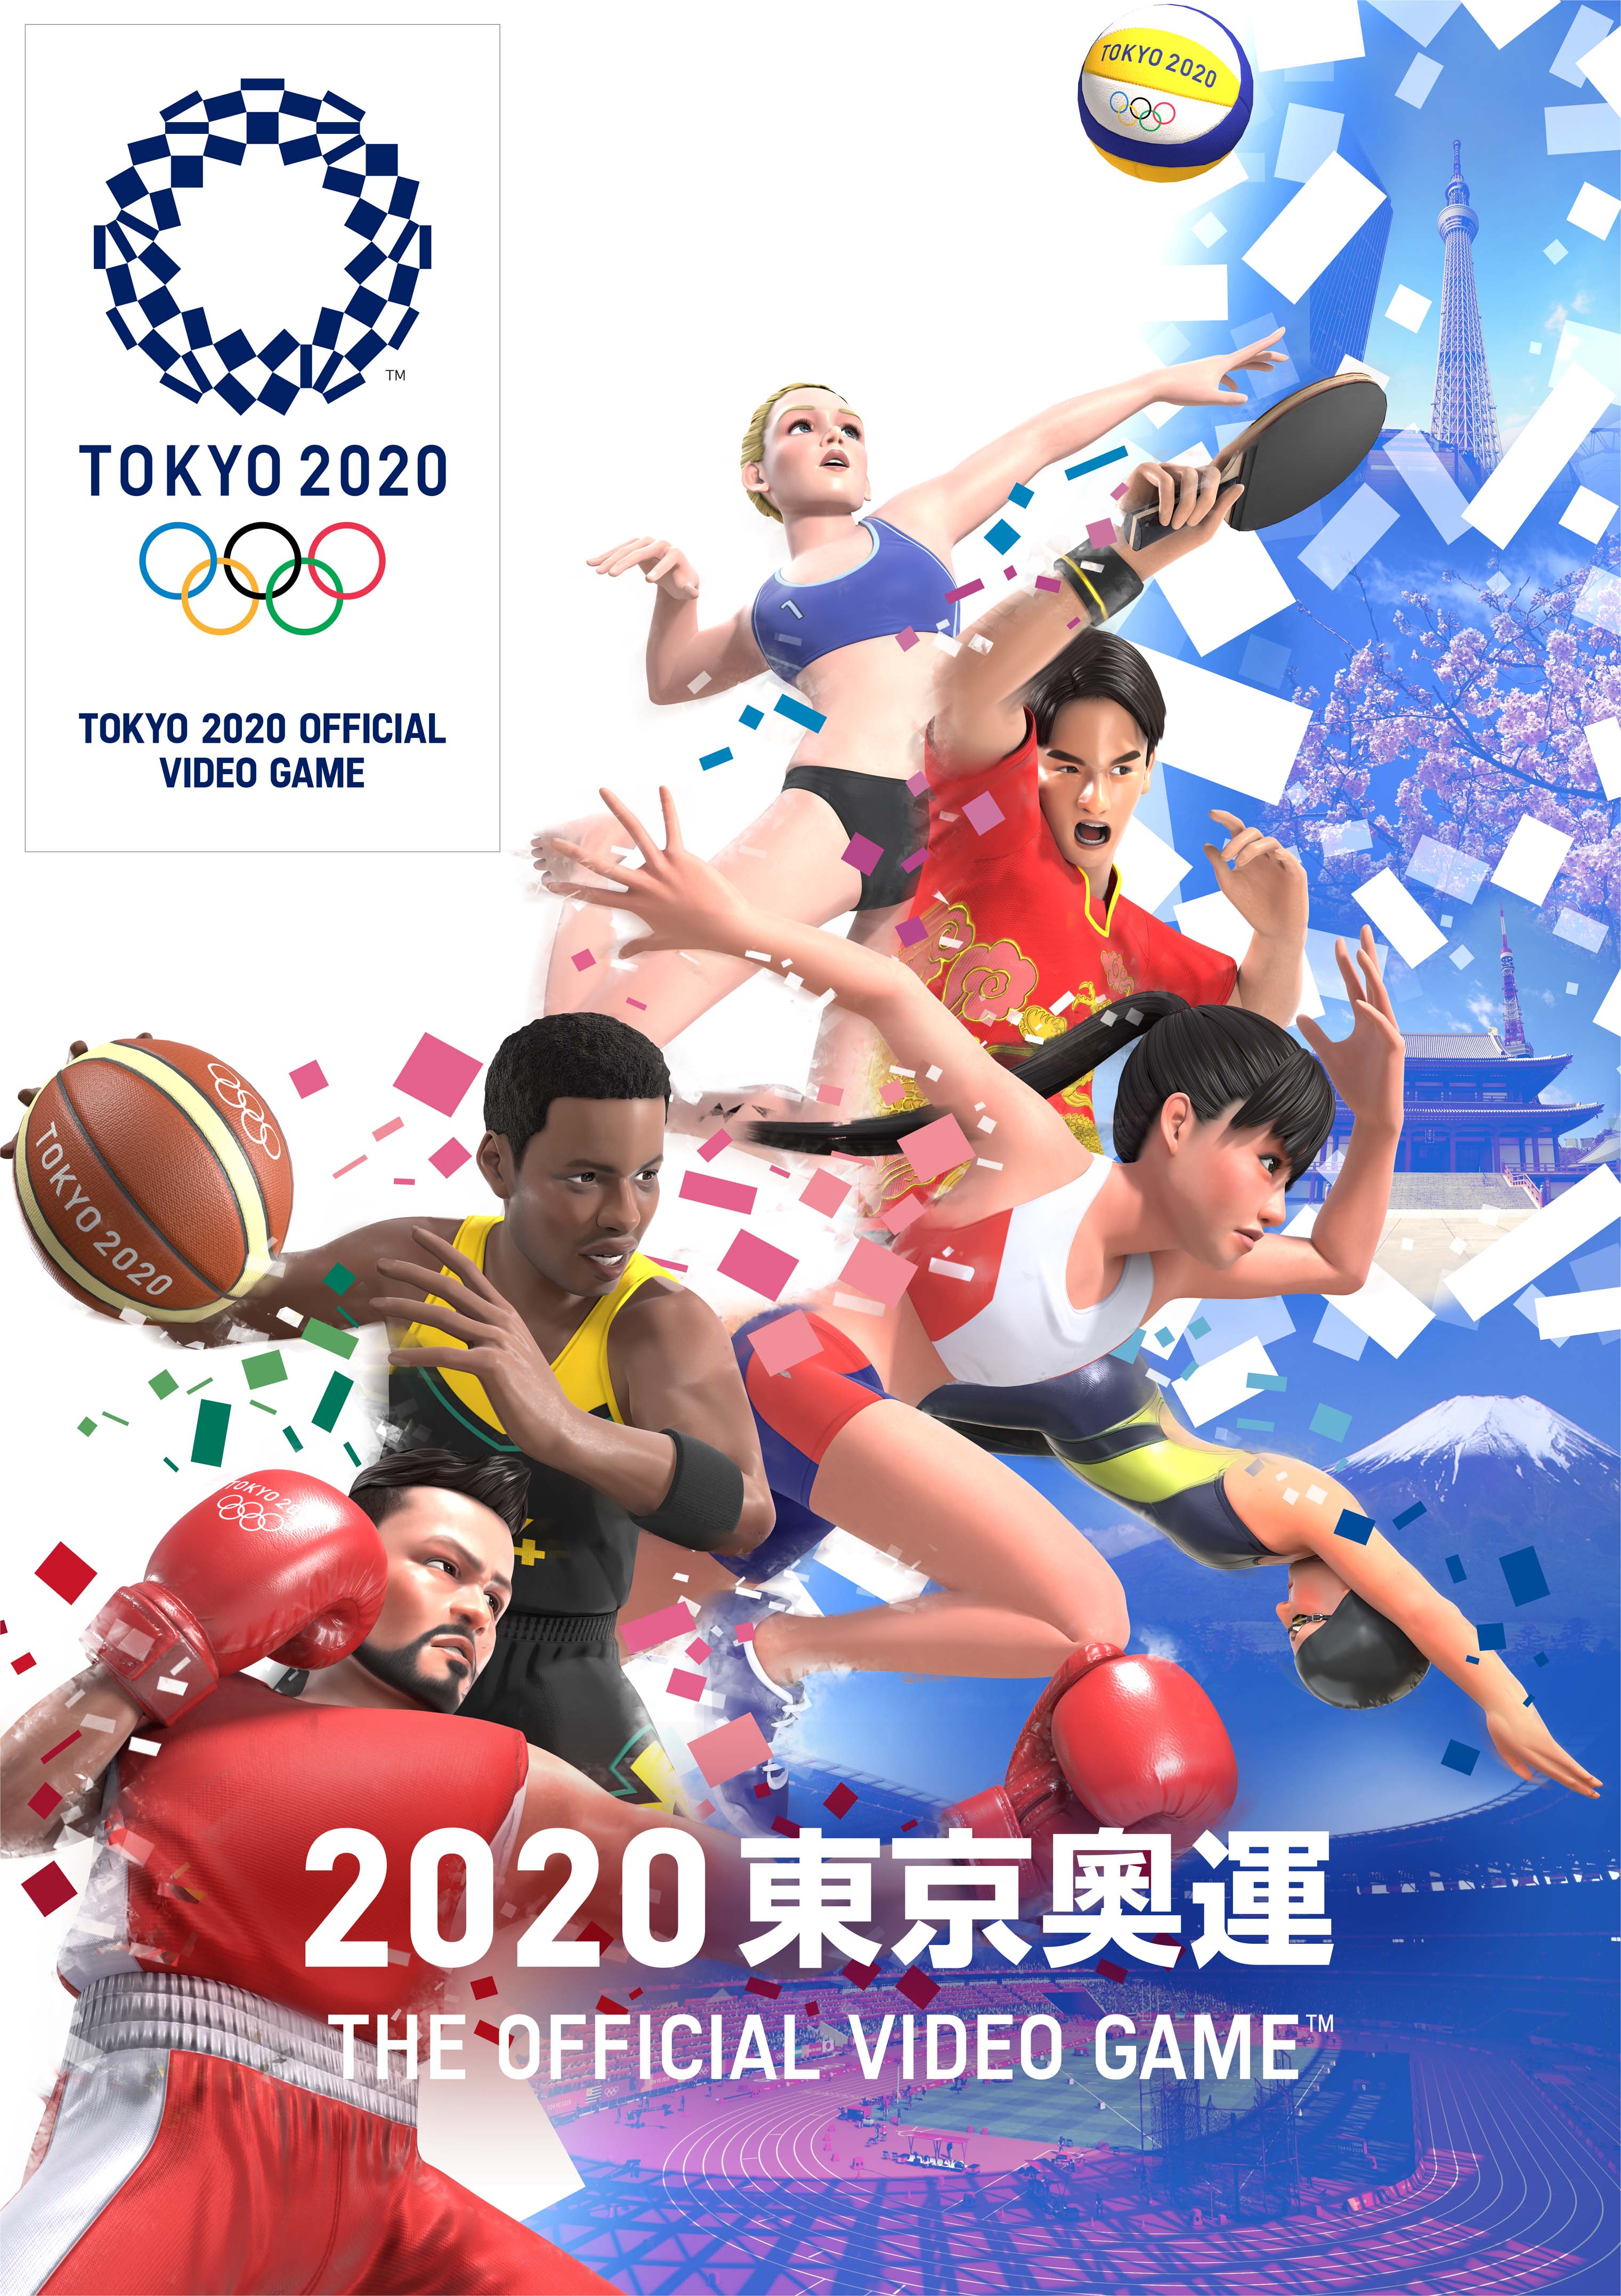 《2020东京奥运》有新竞技项目 还加入角色共享功能